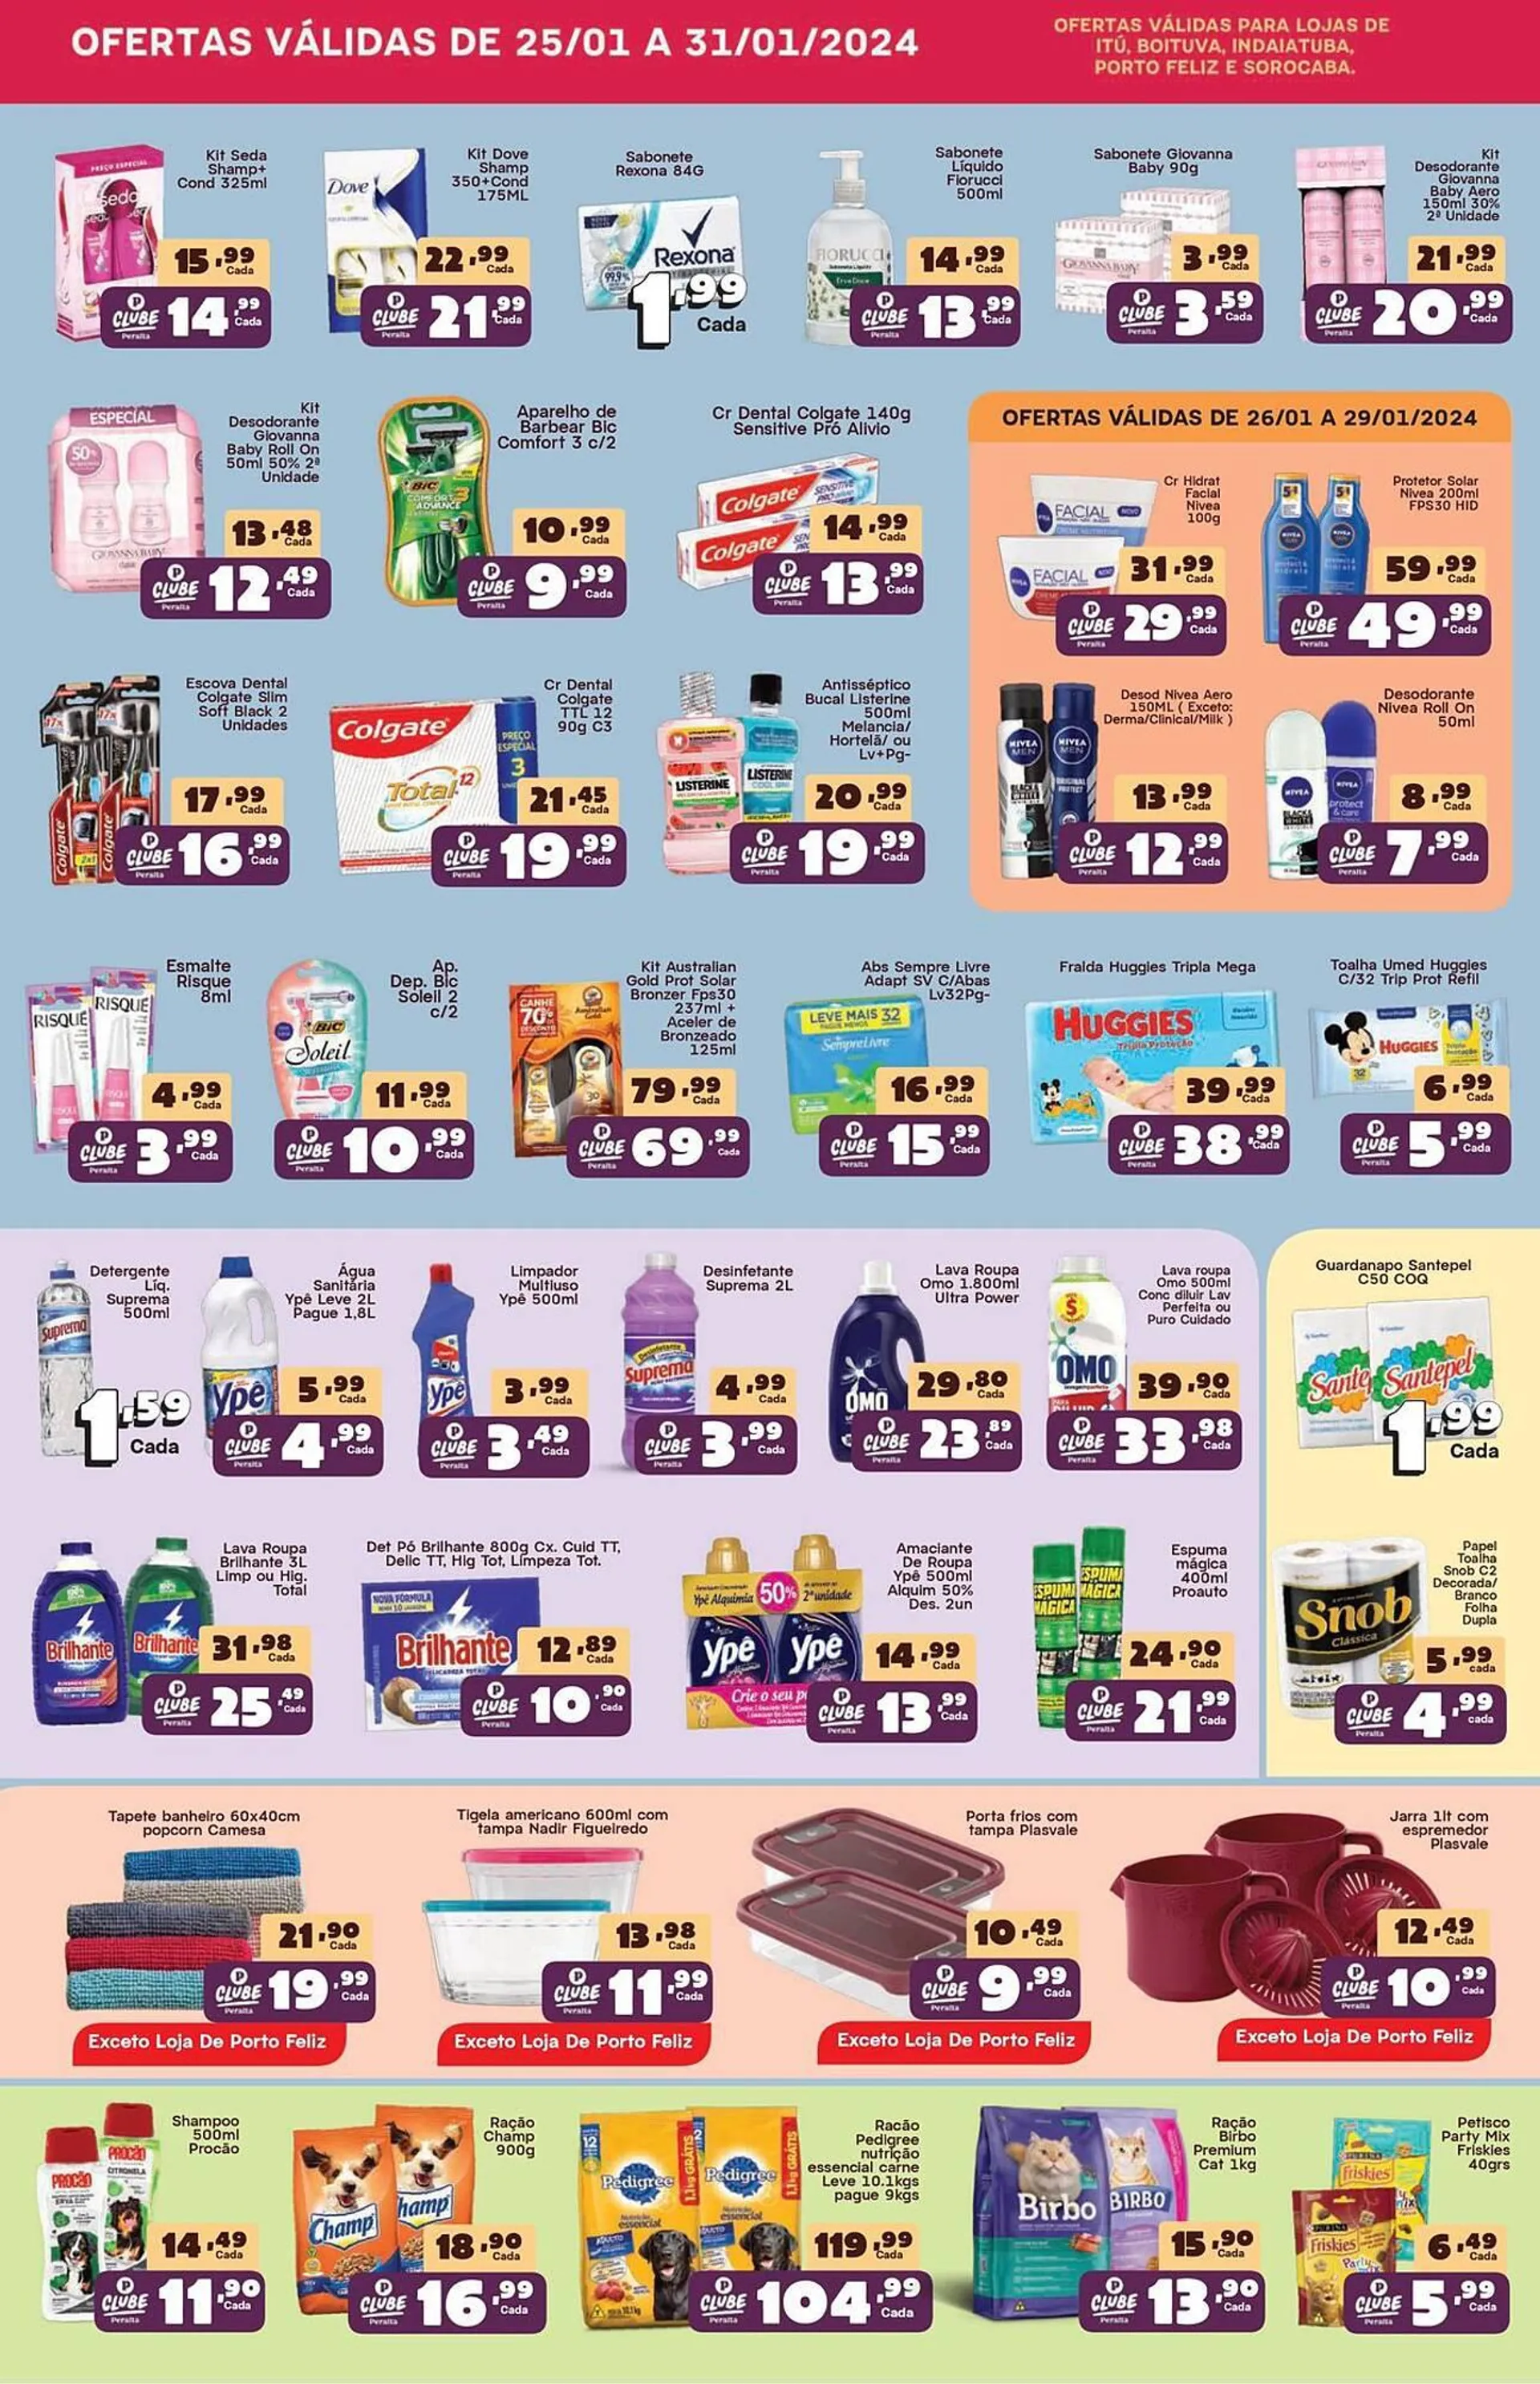 Encarte de Catálogo Paulistão Supermercados 26 de janeiro até 29 de janeiro 2024 - Pagina 2